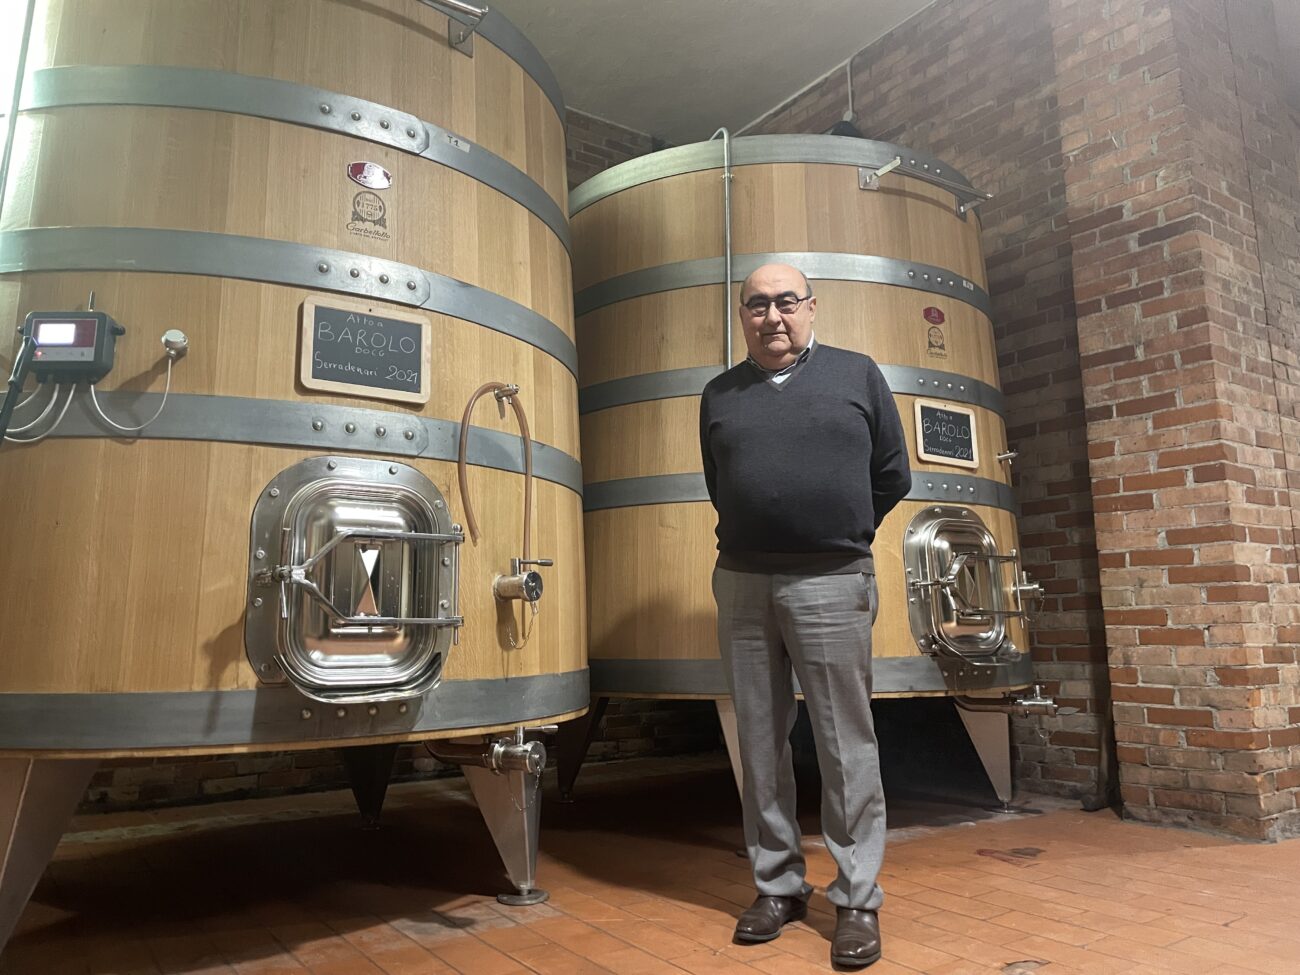 Addio a Gianfranco Lanci, l'ingegnere passato dai computer al vino con Gruppo Dosio